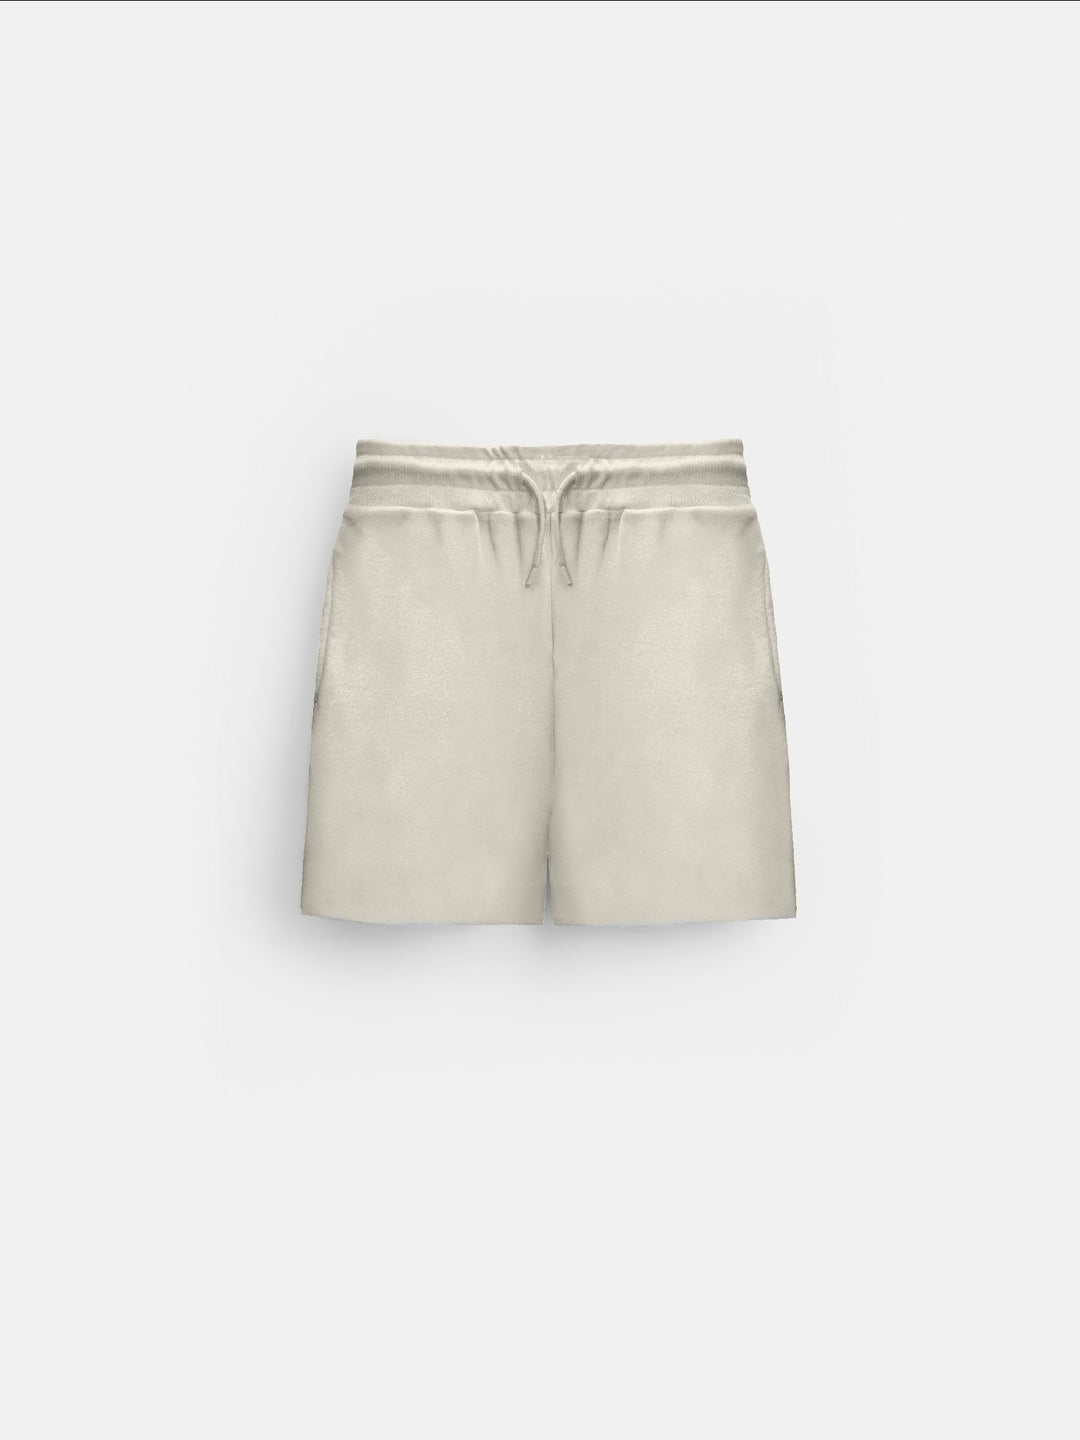 Loose Fit Knit Shorts - Cremé